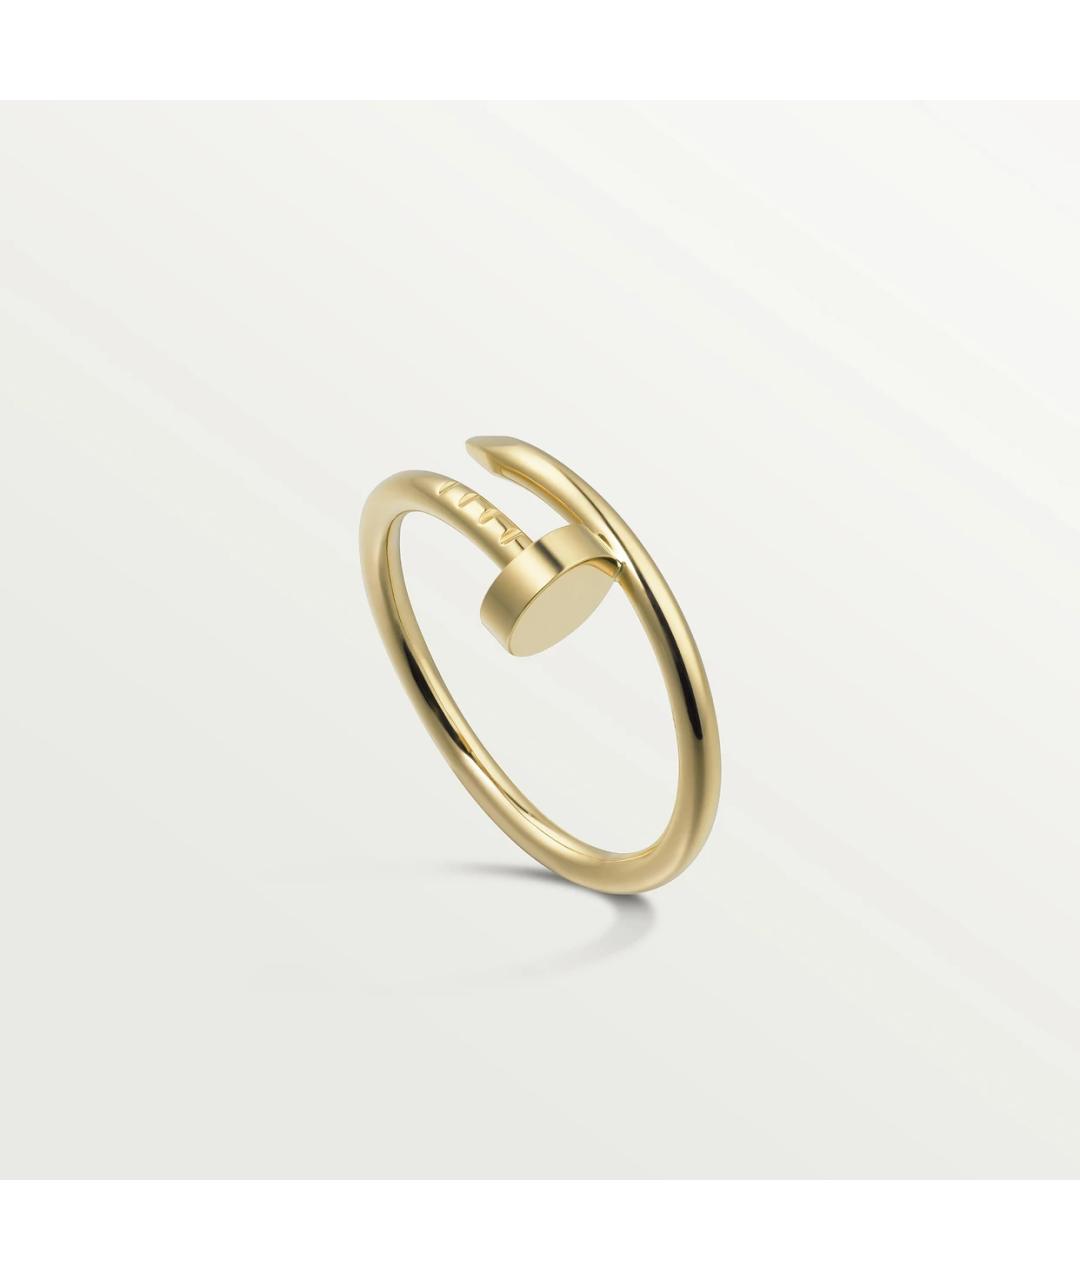 CARTIER Золотое кольцо из желтого золота, фото 9